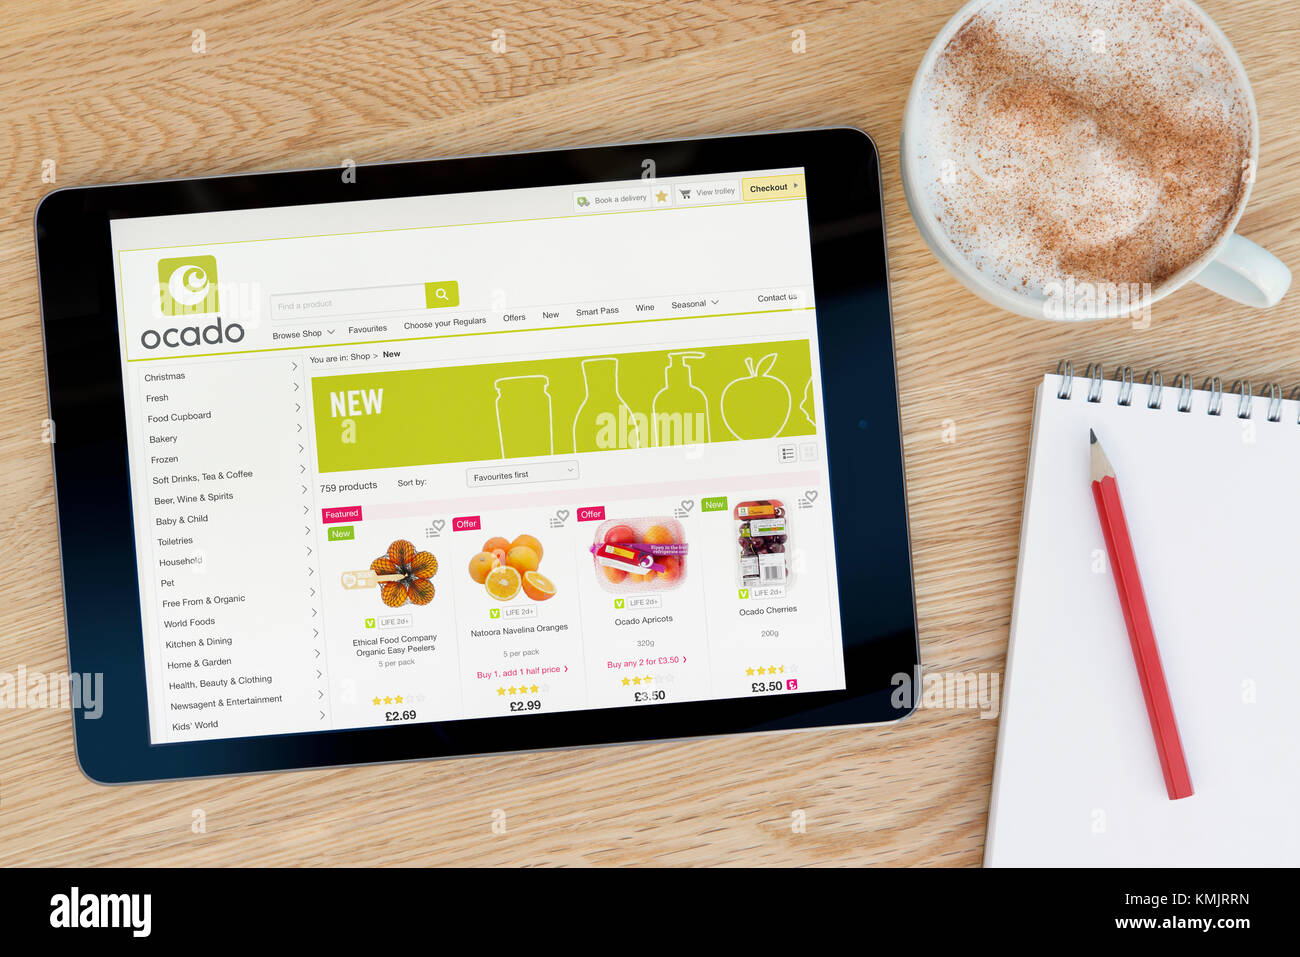 Le site web de l'Ocado dispose sur un iPad tablet device qui repose sur une table en bois à côté d'un bloc-notes et un crayon et une tasse de café (rédaction uniquement) Banque D'Images